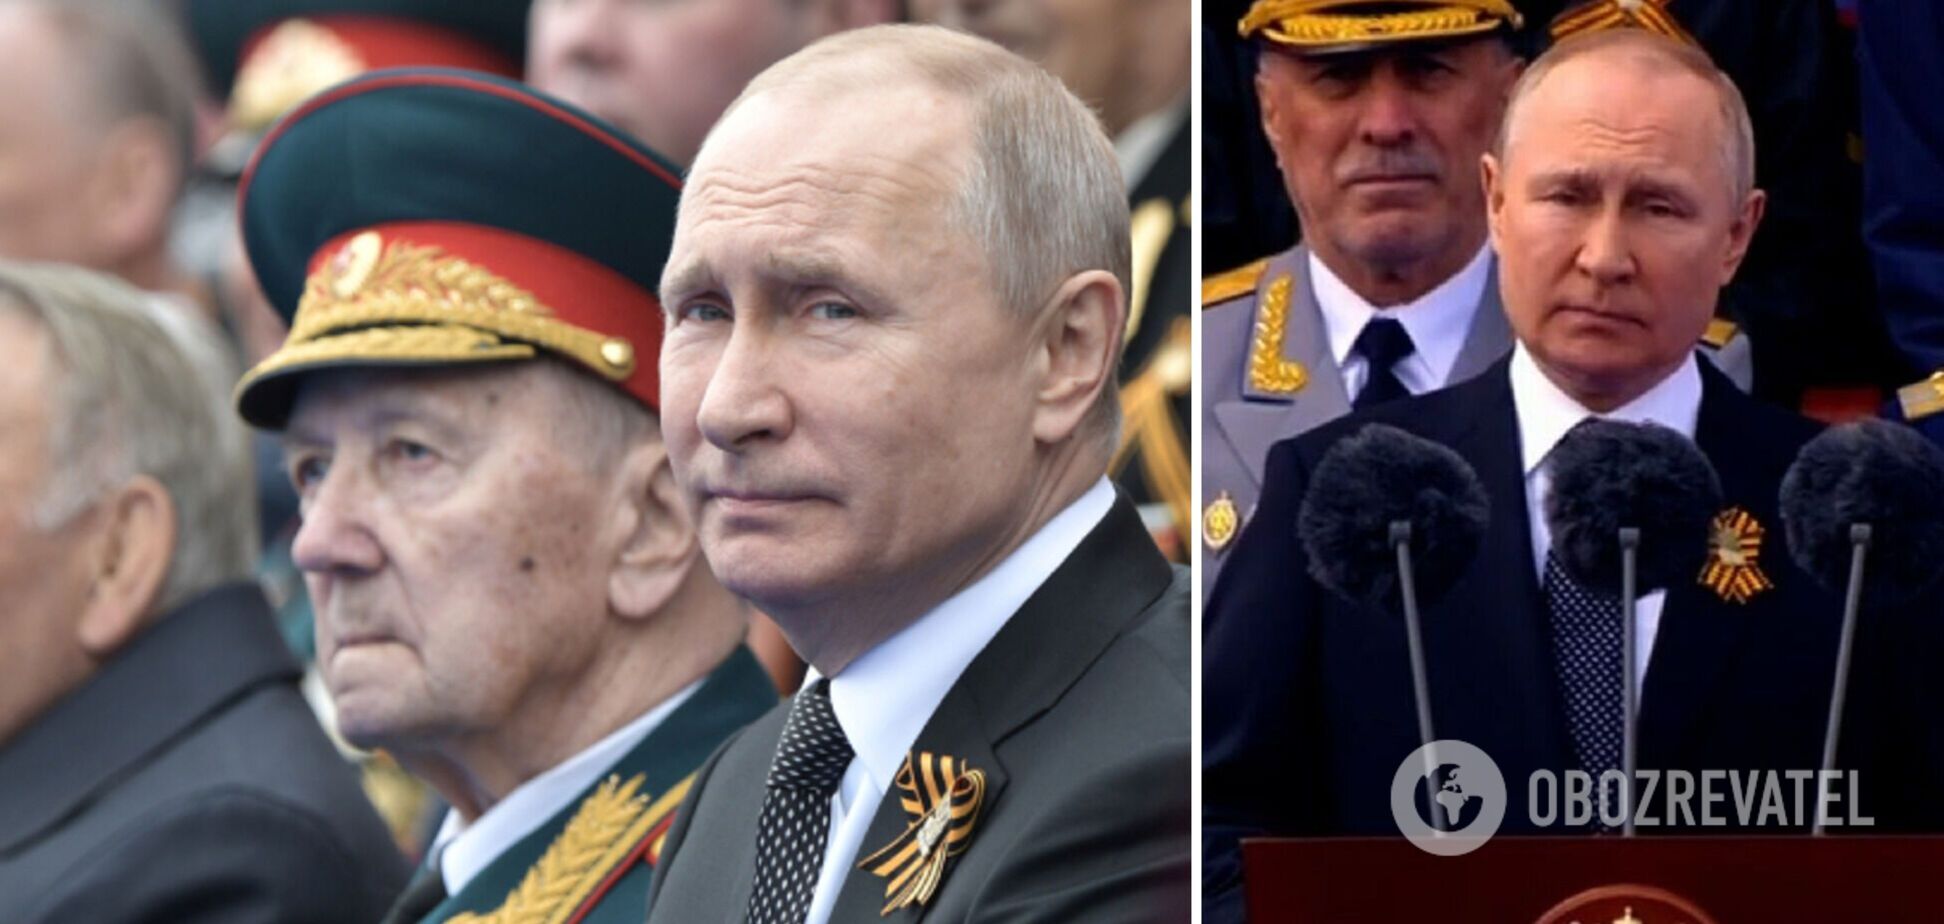 'Він нічого не розуміє': Курносова оцінила промову Путіна на параді 9 травня